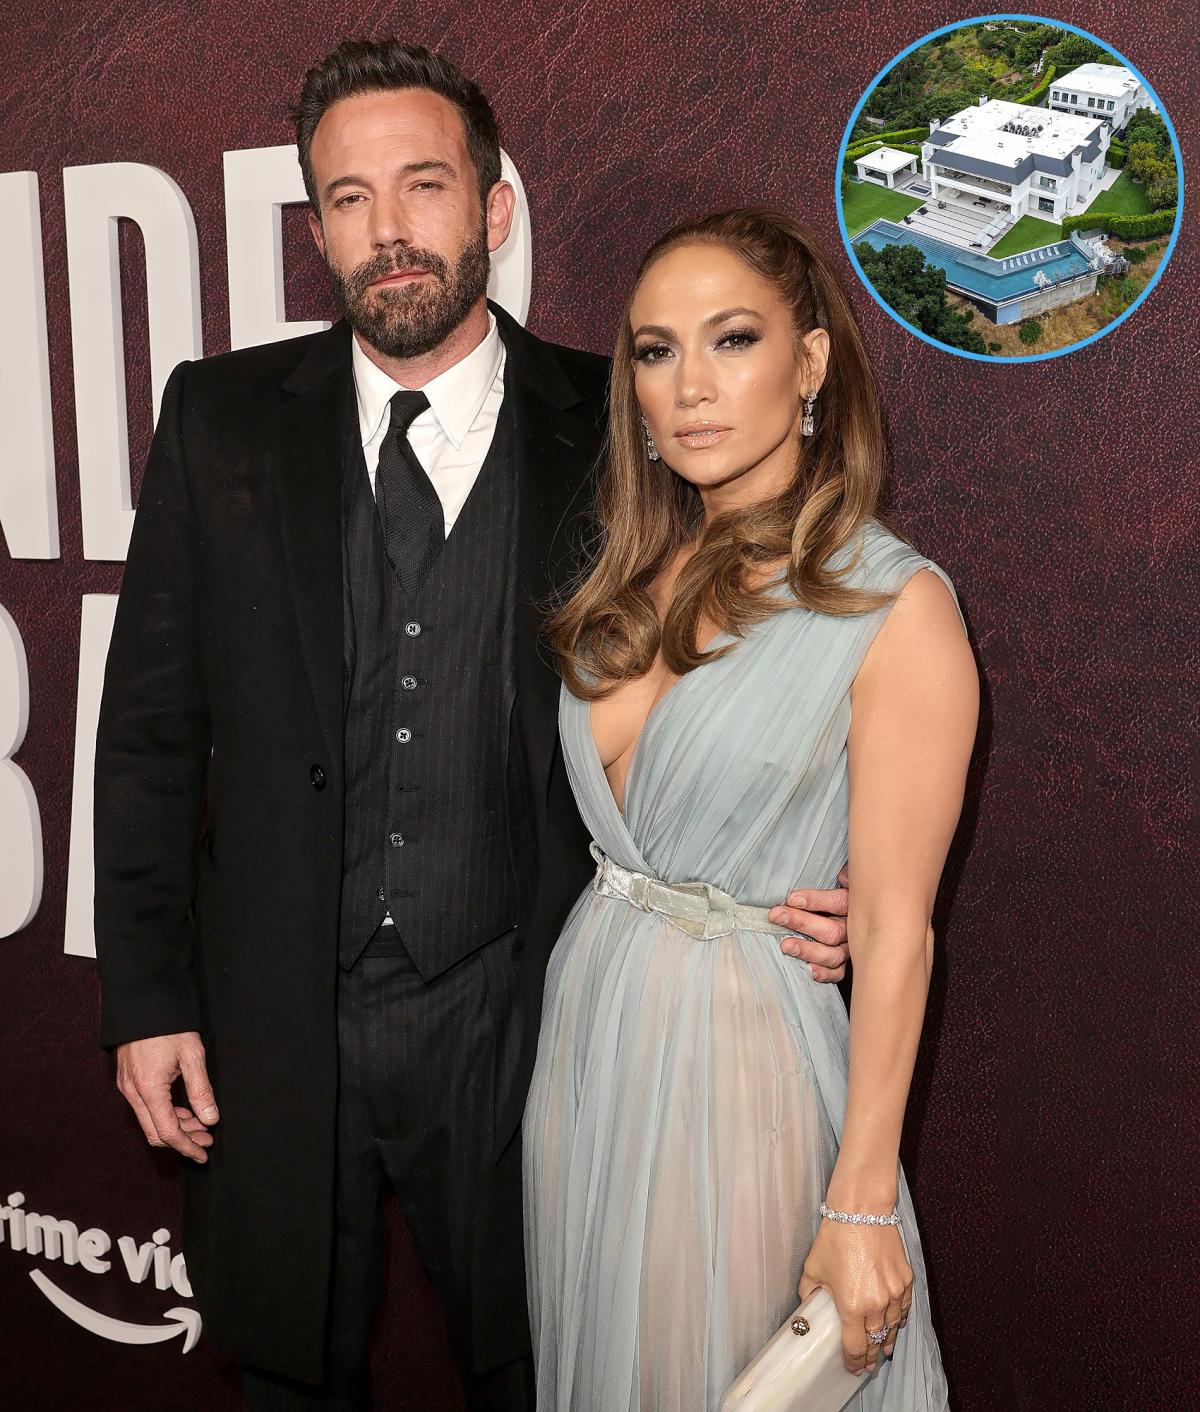 Ben Affleck and Jennifer Lopez: Rumors of Splitting Up or Just a Media Sensation?